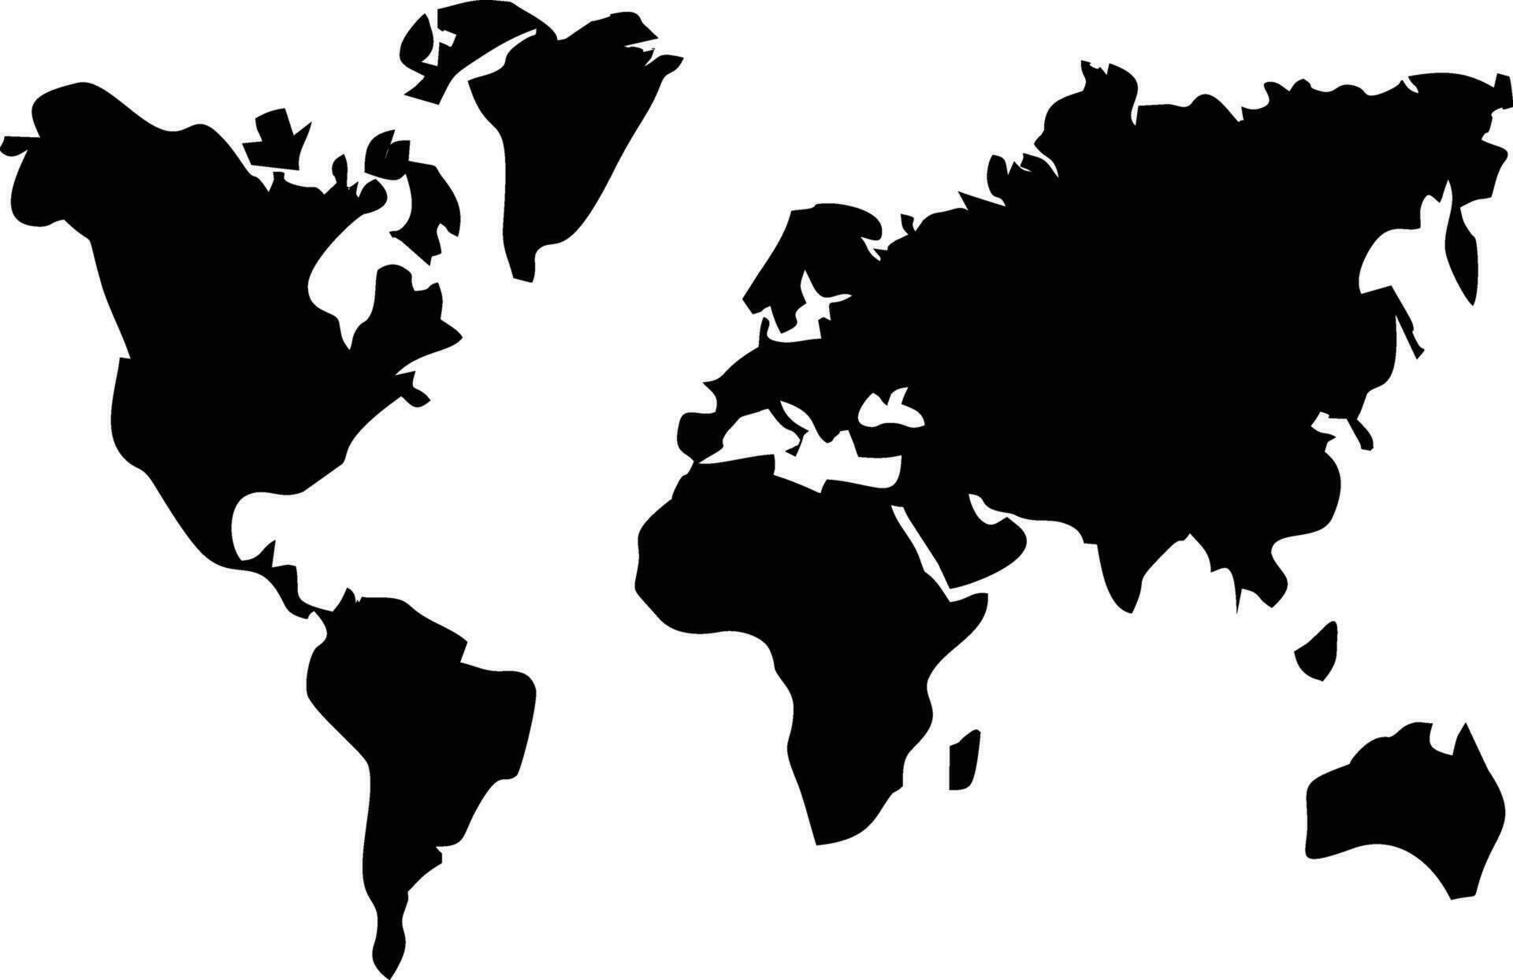 globo pianeta terra icona simbolo vettore Immagine. illustrazione di il mondo globale vettore design. eps 10globo pianeta terra icona simbolo vettore Immagine. illustrazione di il mondo globale vettore design. eps 10